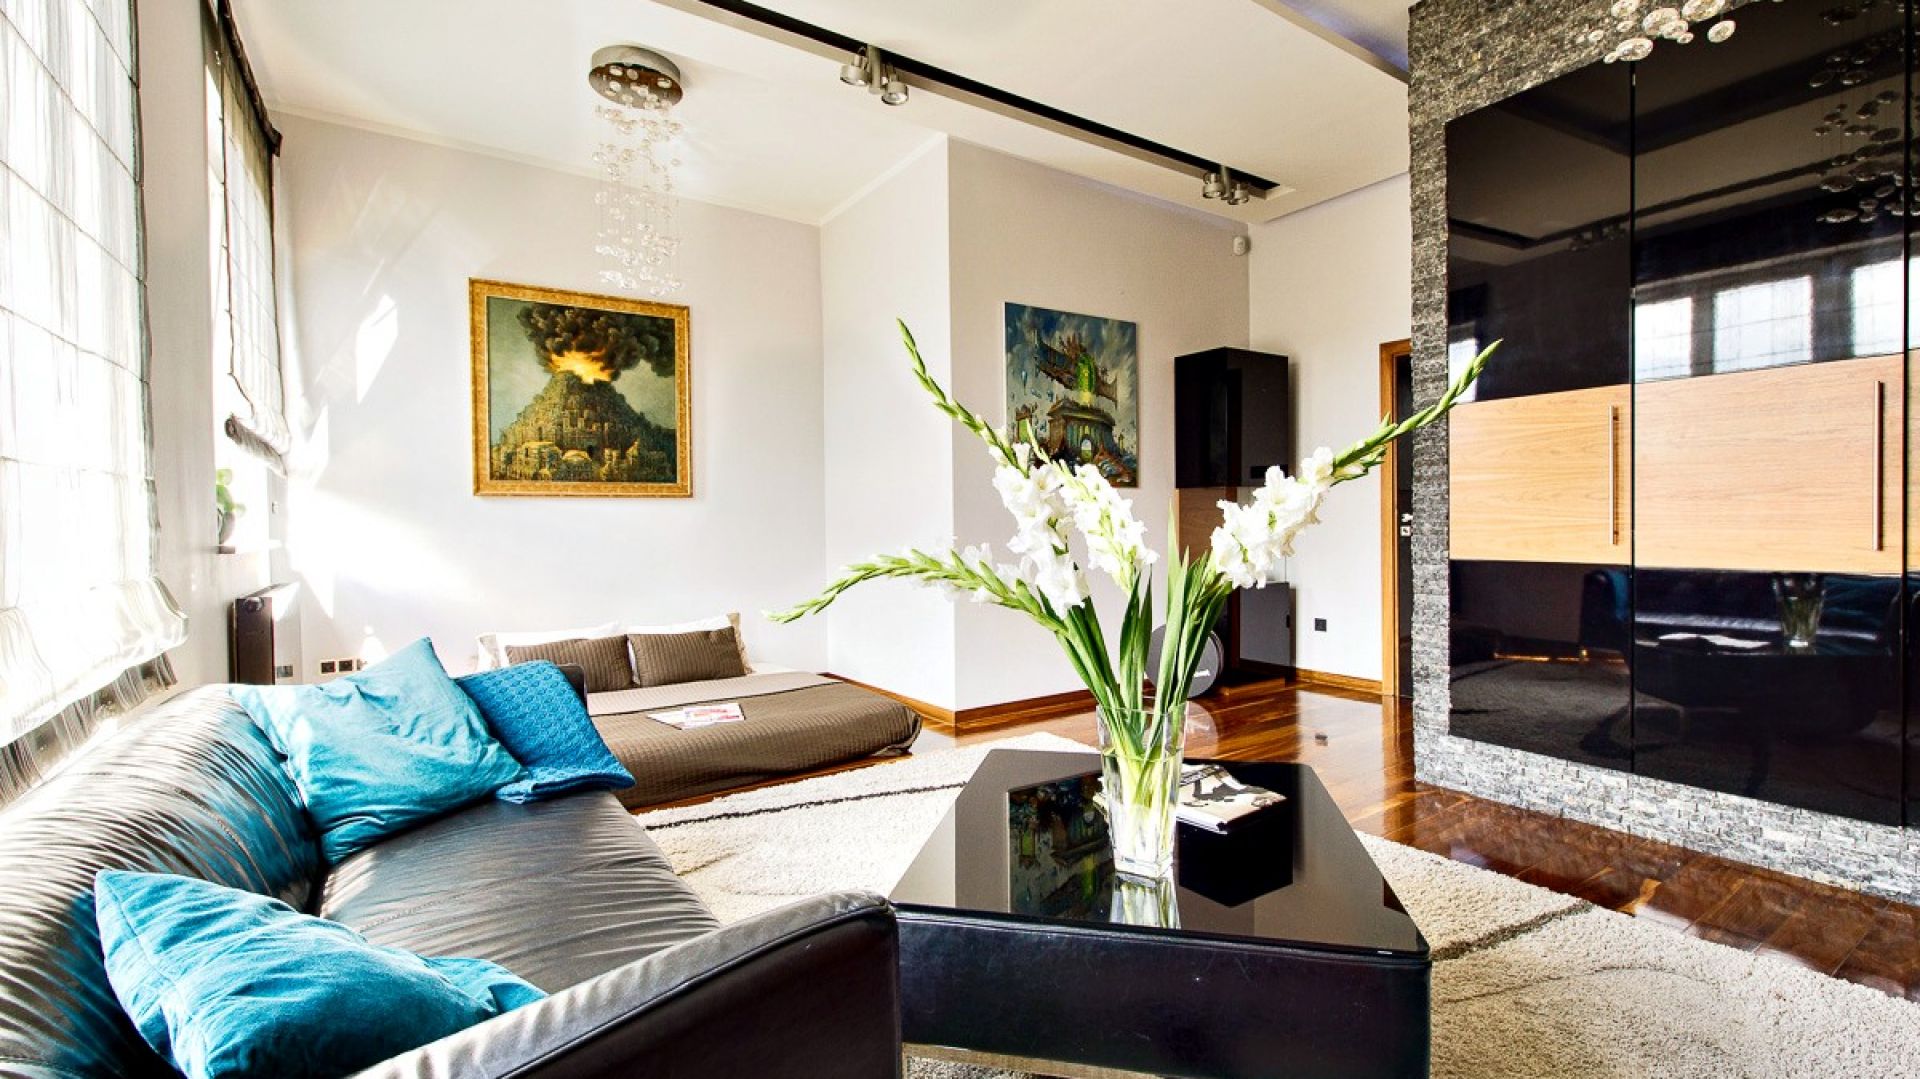 Kamień i drewno w salonie. Zobacz piękny apartament w Krakowie